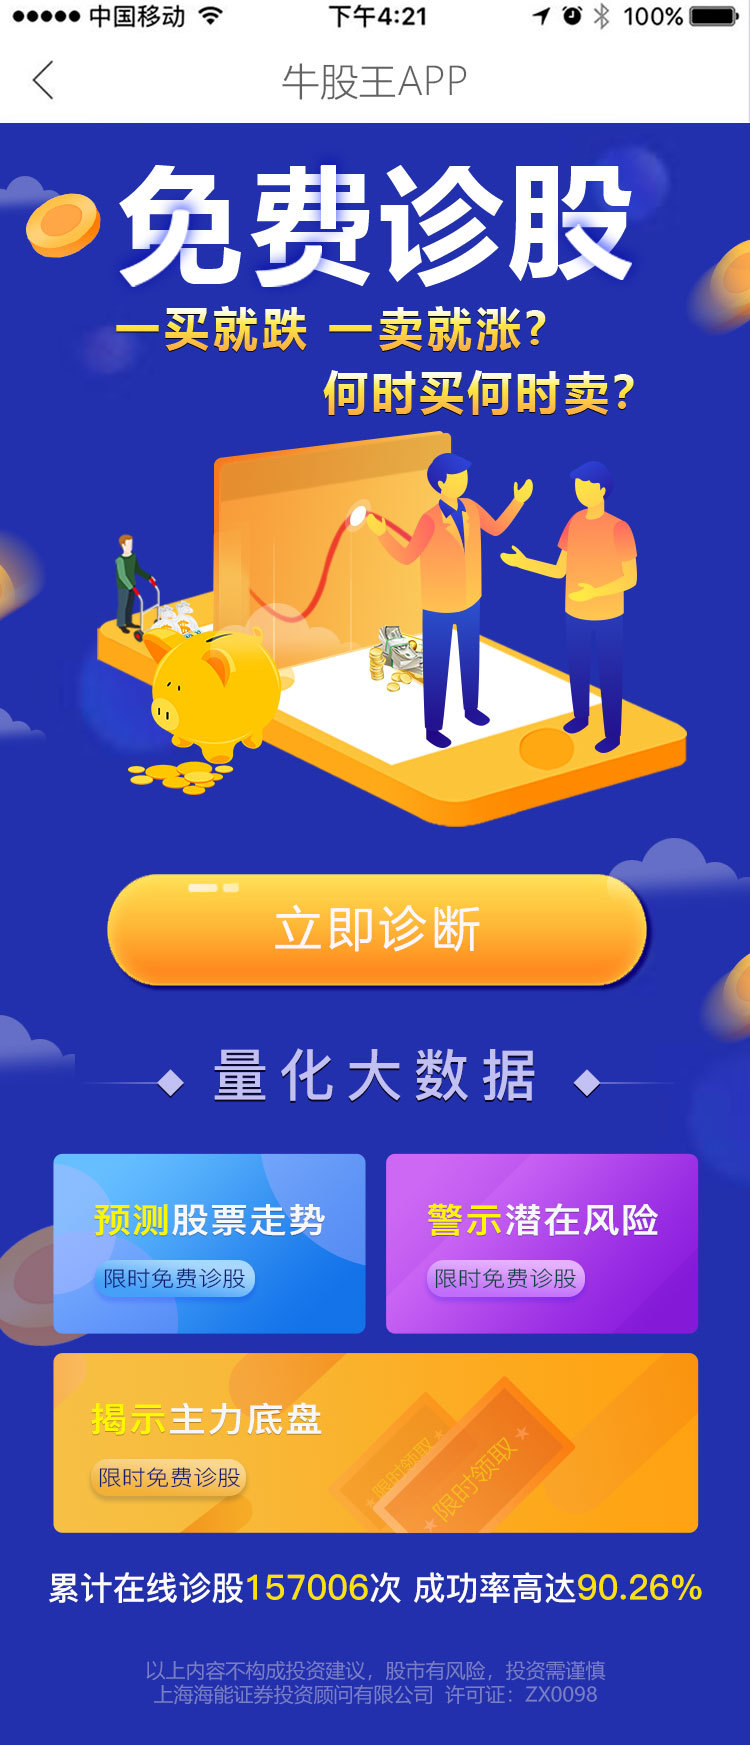 牛股王app主题页